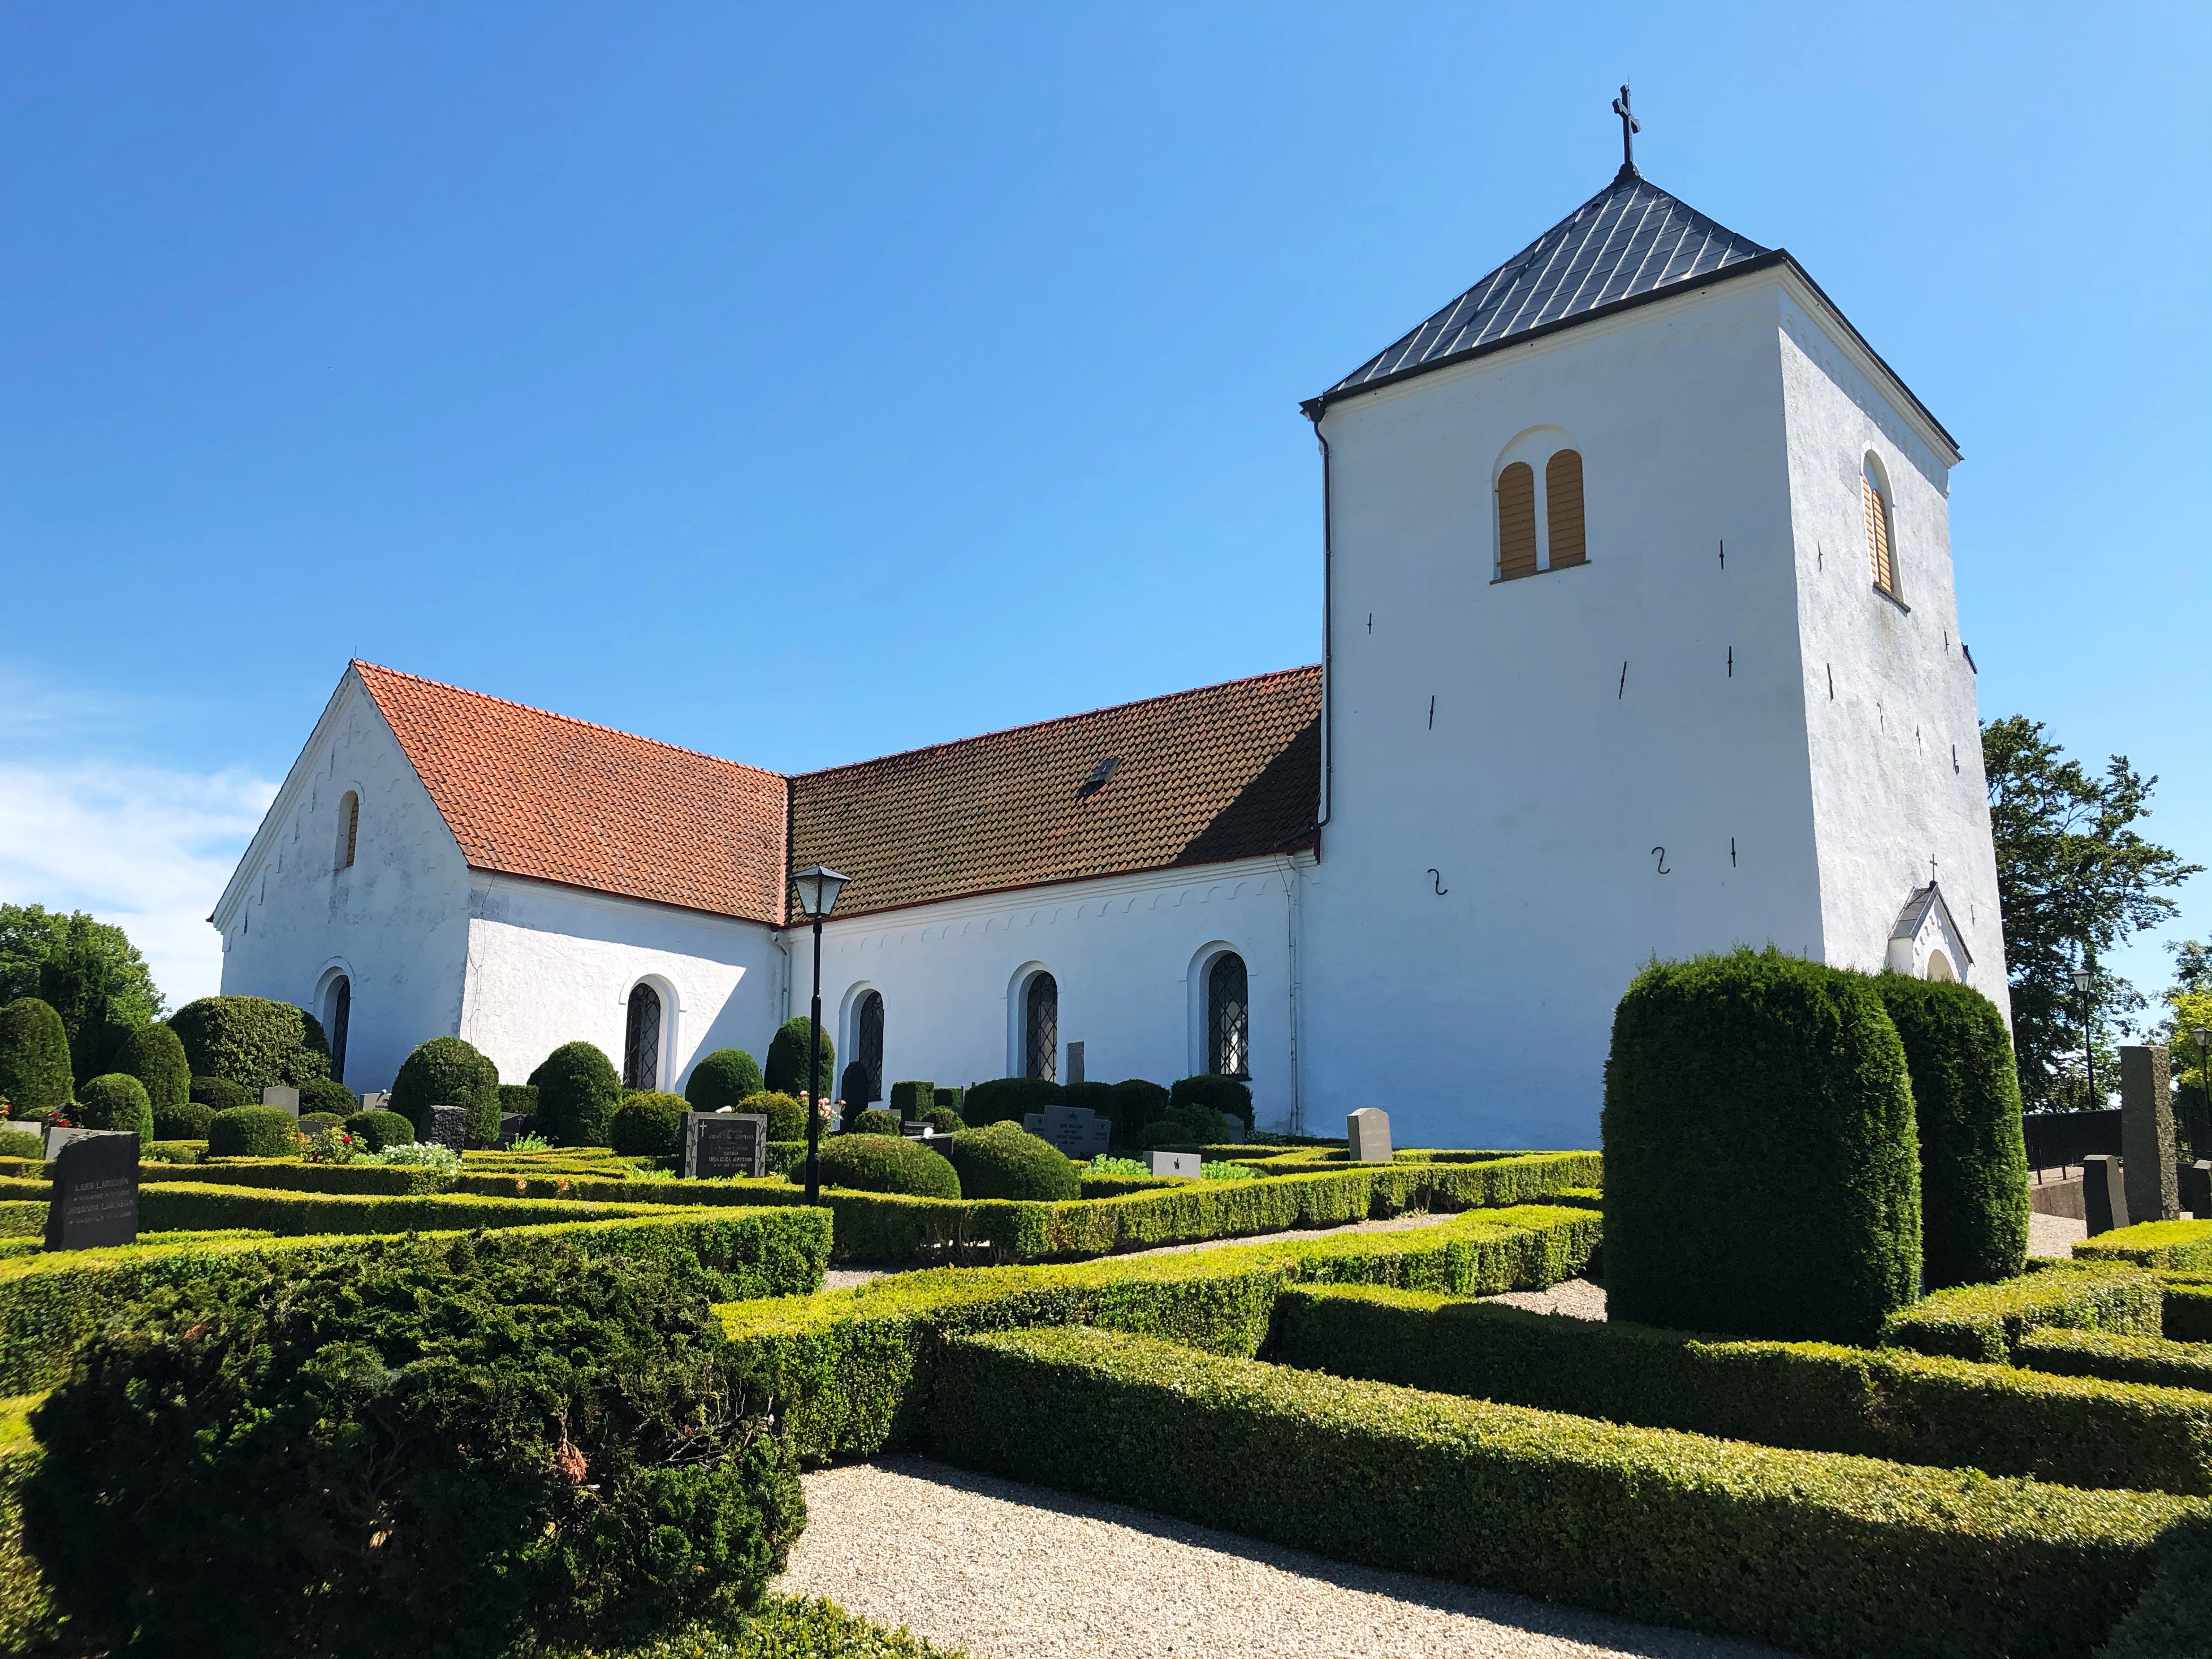 Grönby kyrka, sett från NV, i juni 2020